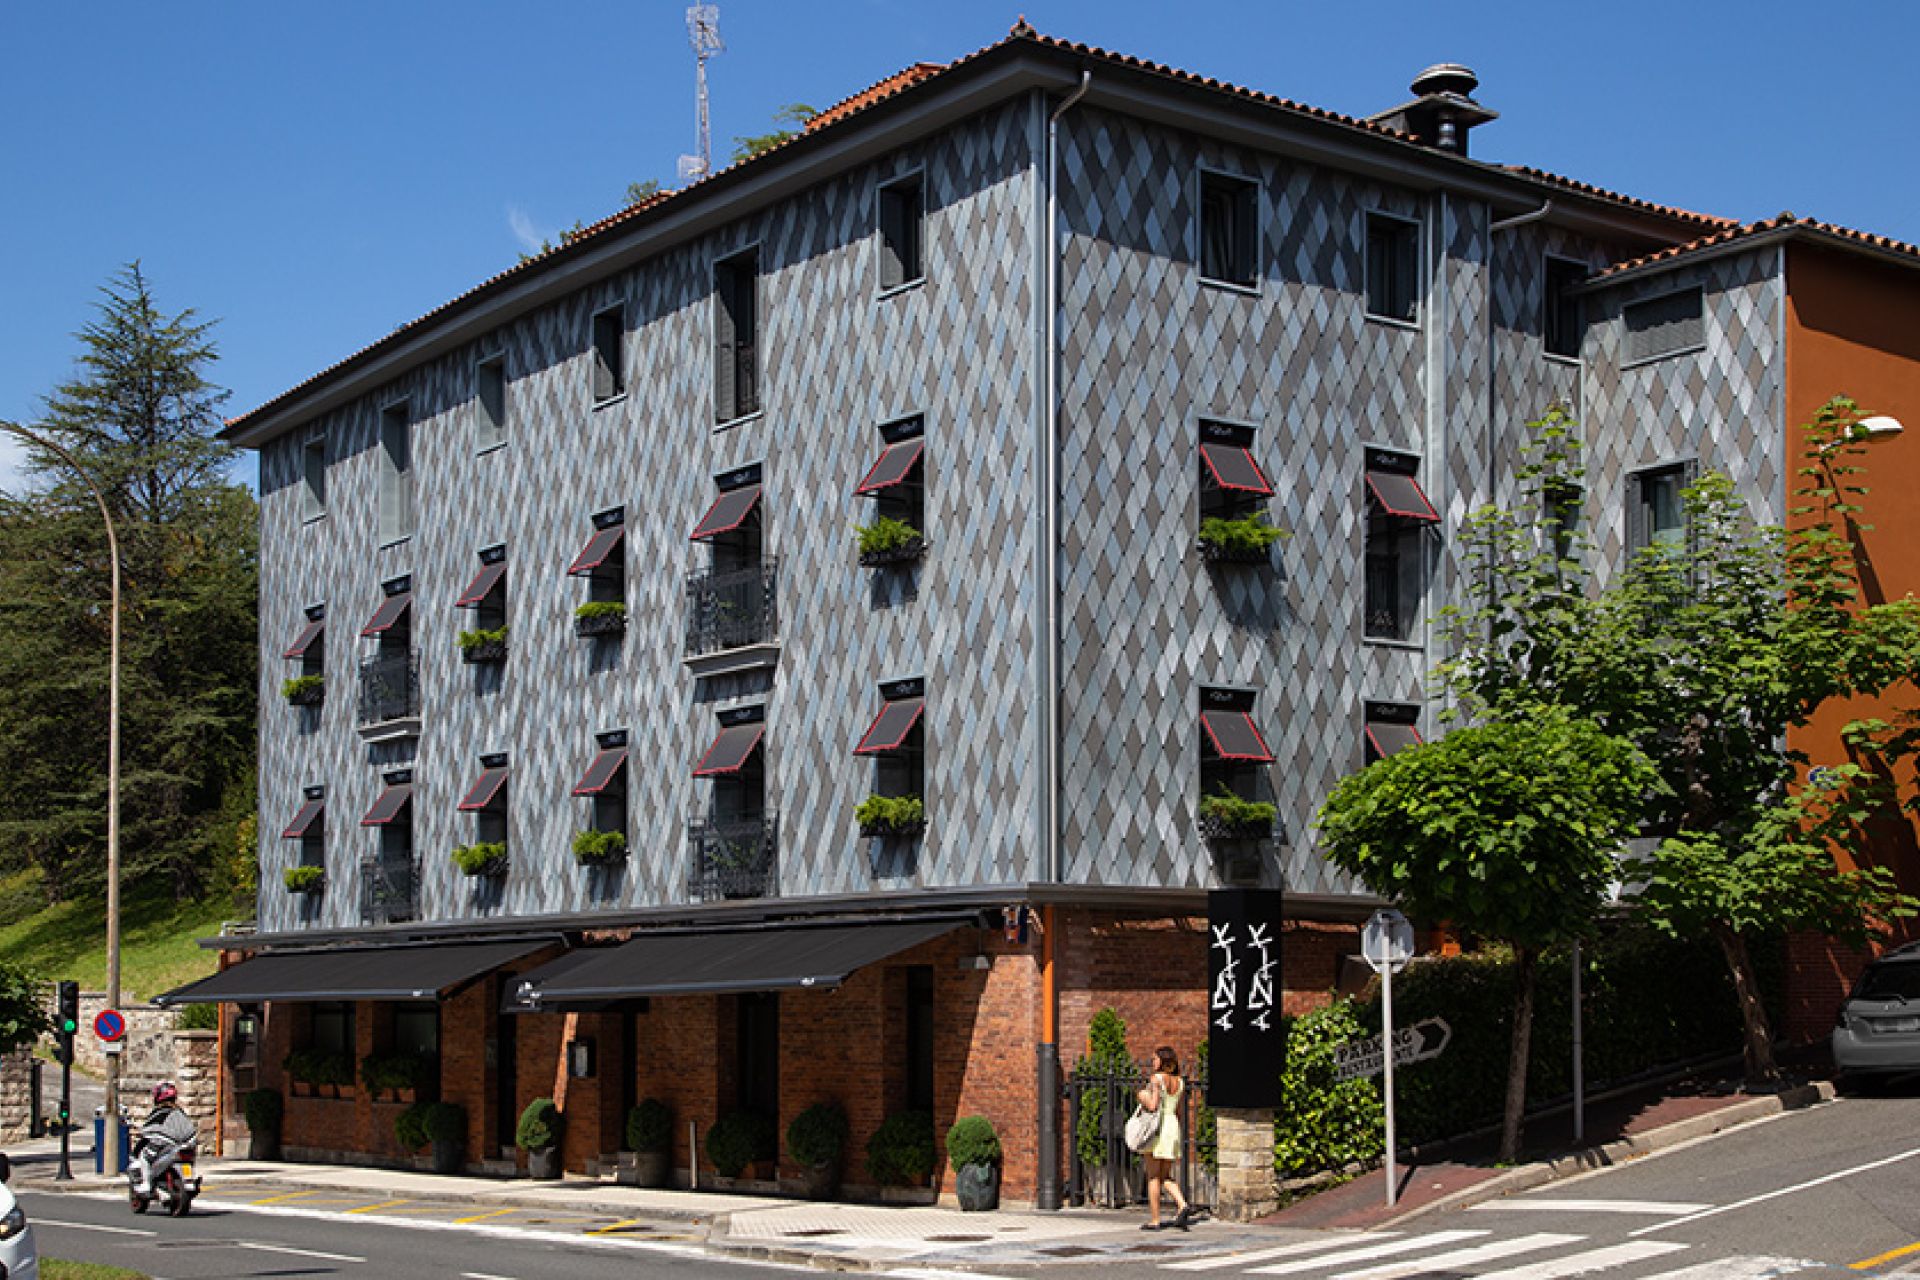 Fotografía de arquitectura, fachada del restaurante Arzak